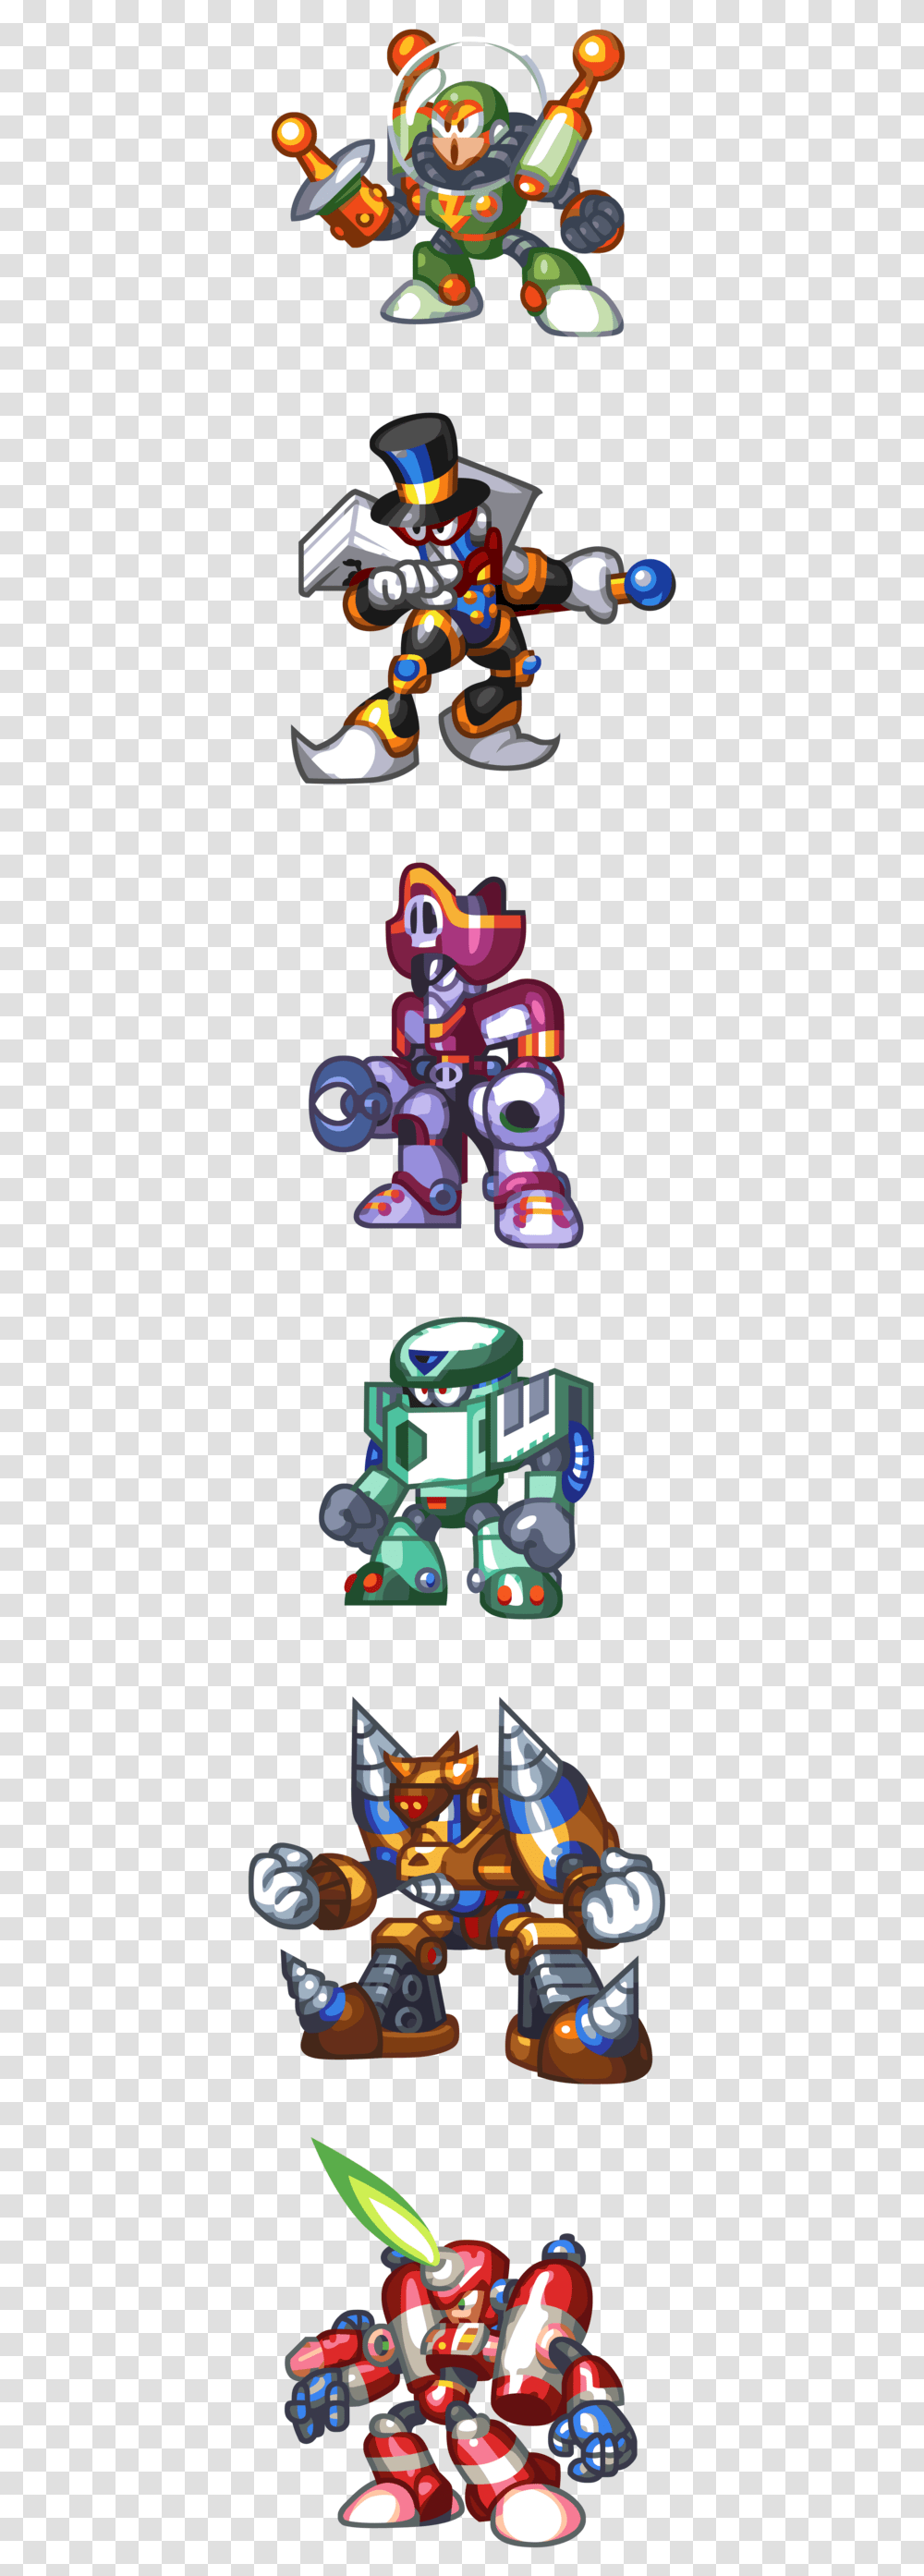 Bit Mega Man And Bass Burner Man, Robot, Toy, Light Transparent Png